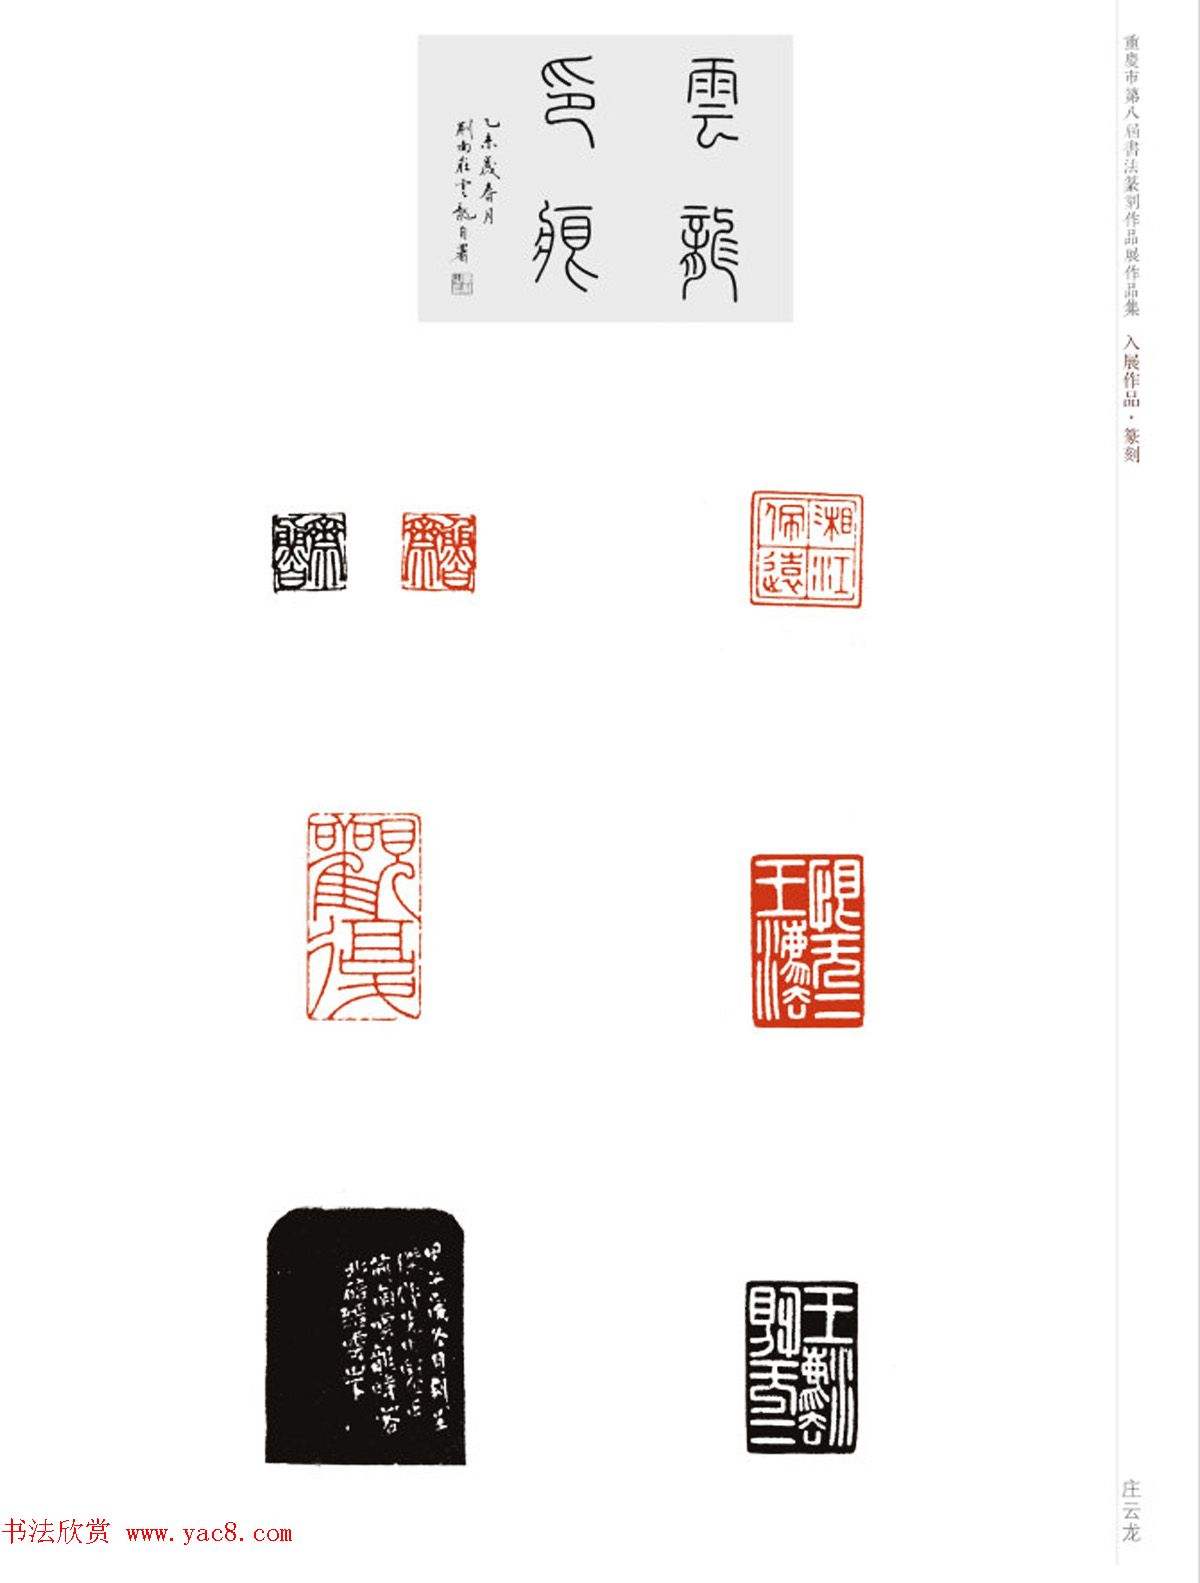 重庆市第八届书法篆刻展获奖入展篆刻作品欣赏